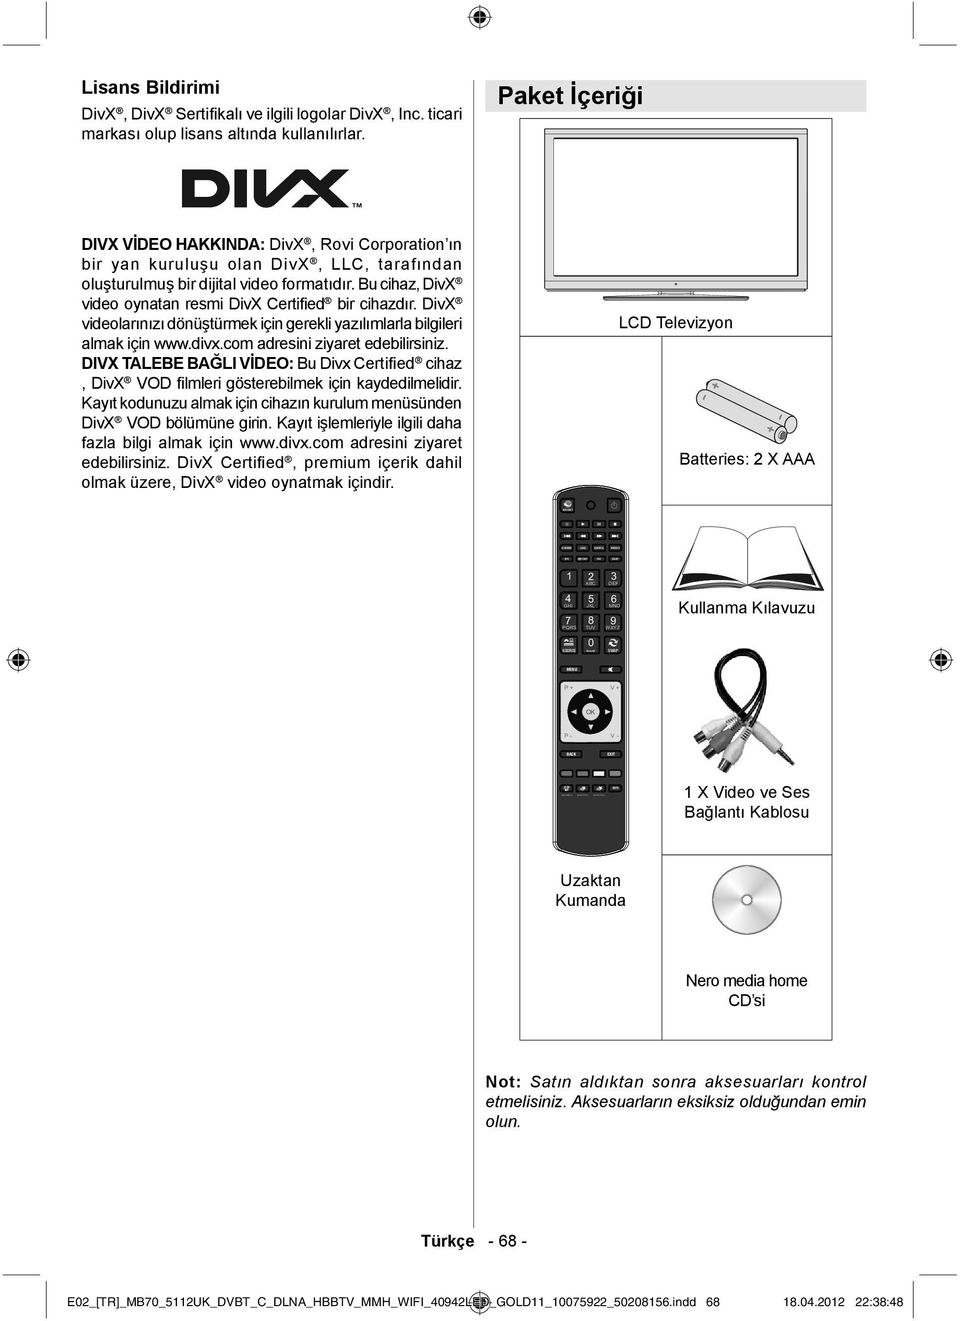 Bu cihaz, DivX video oynatan resmi DivX Certified bir cihazdır. DivX videolarınızı dönüştürmek için gerekli yazılımlarla bilgileri almak için www.divx.com adresini ziyaret edebilirsiniz.